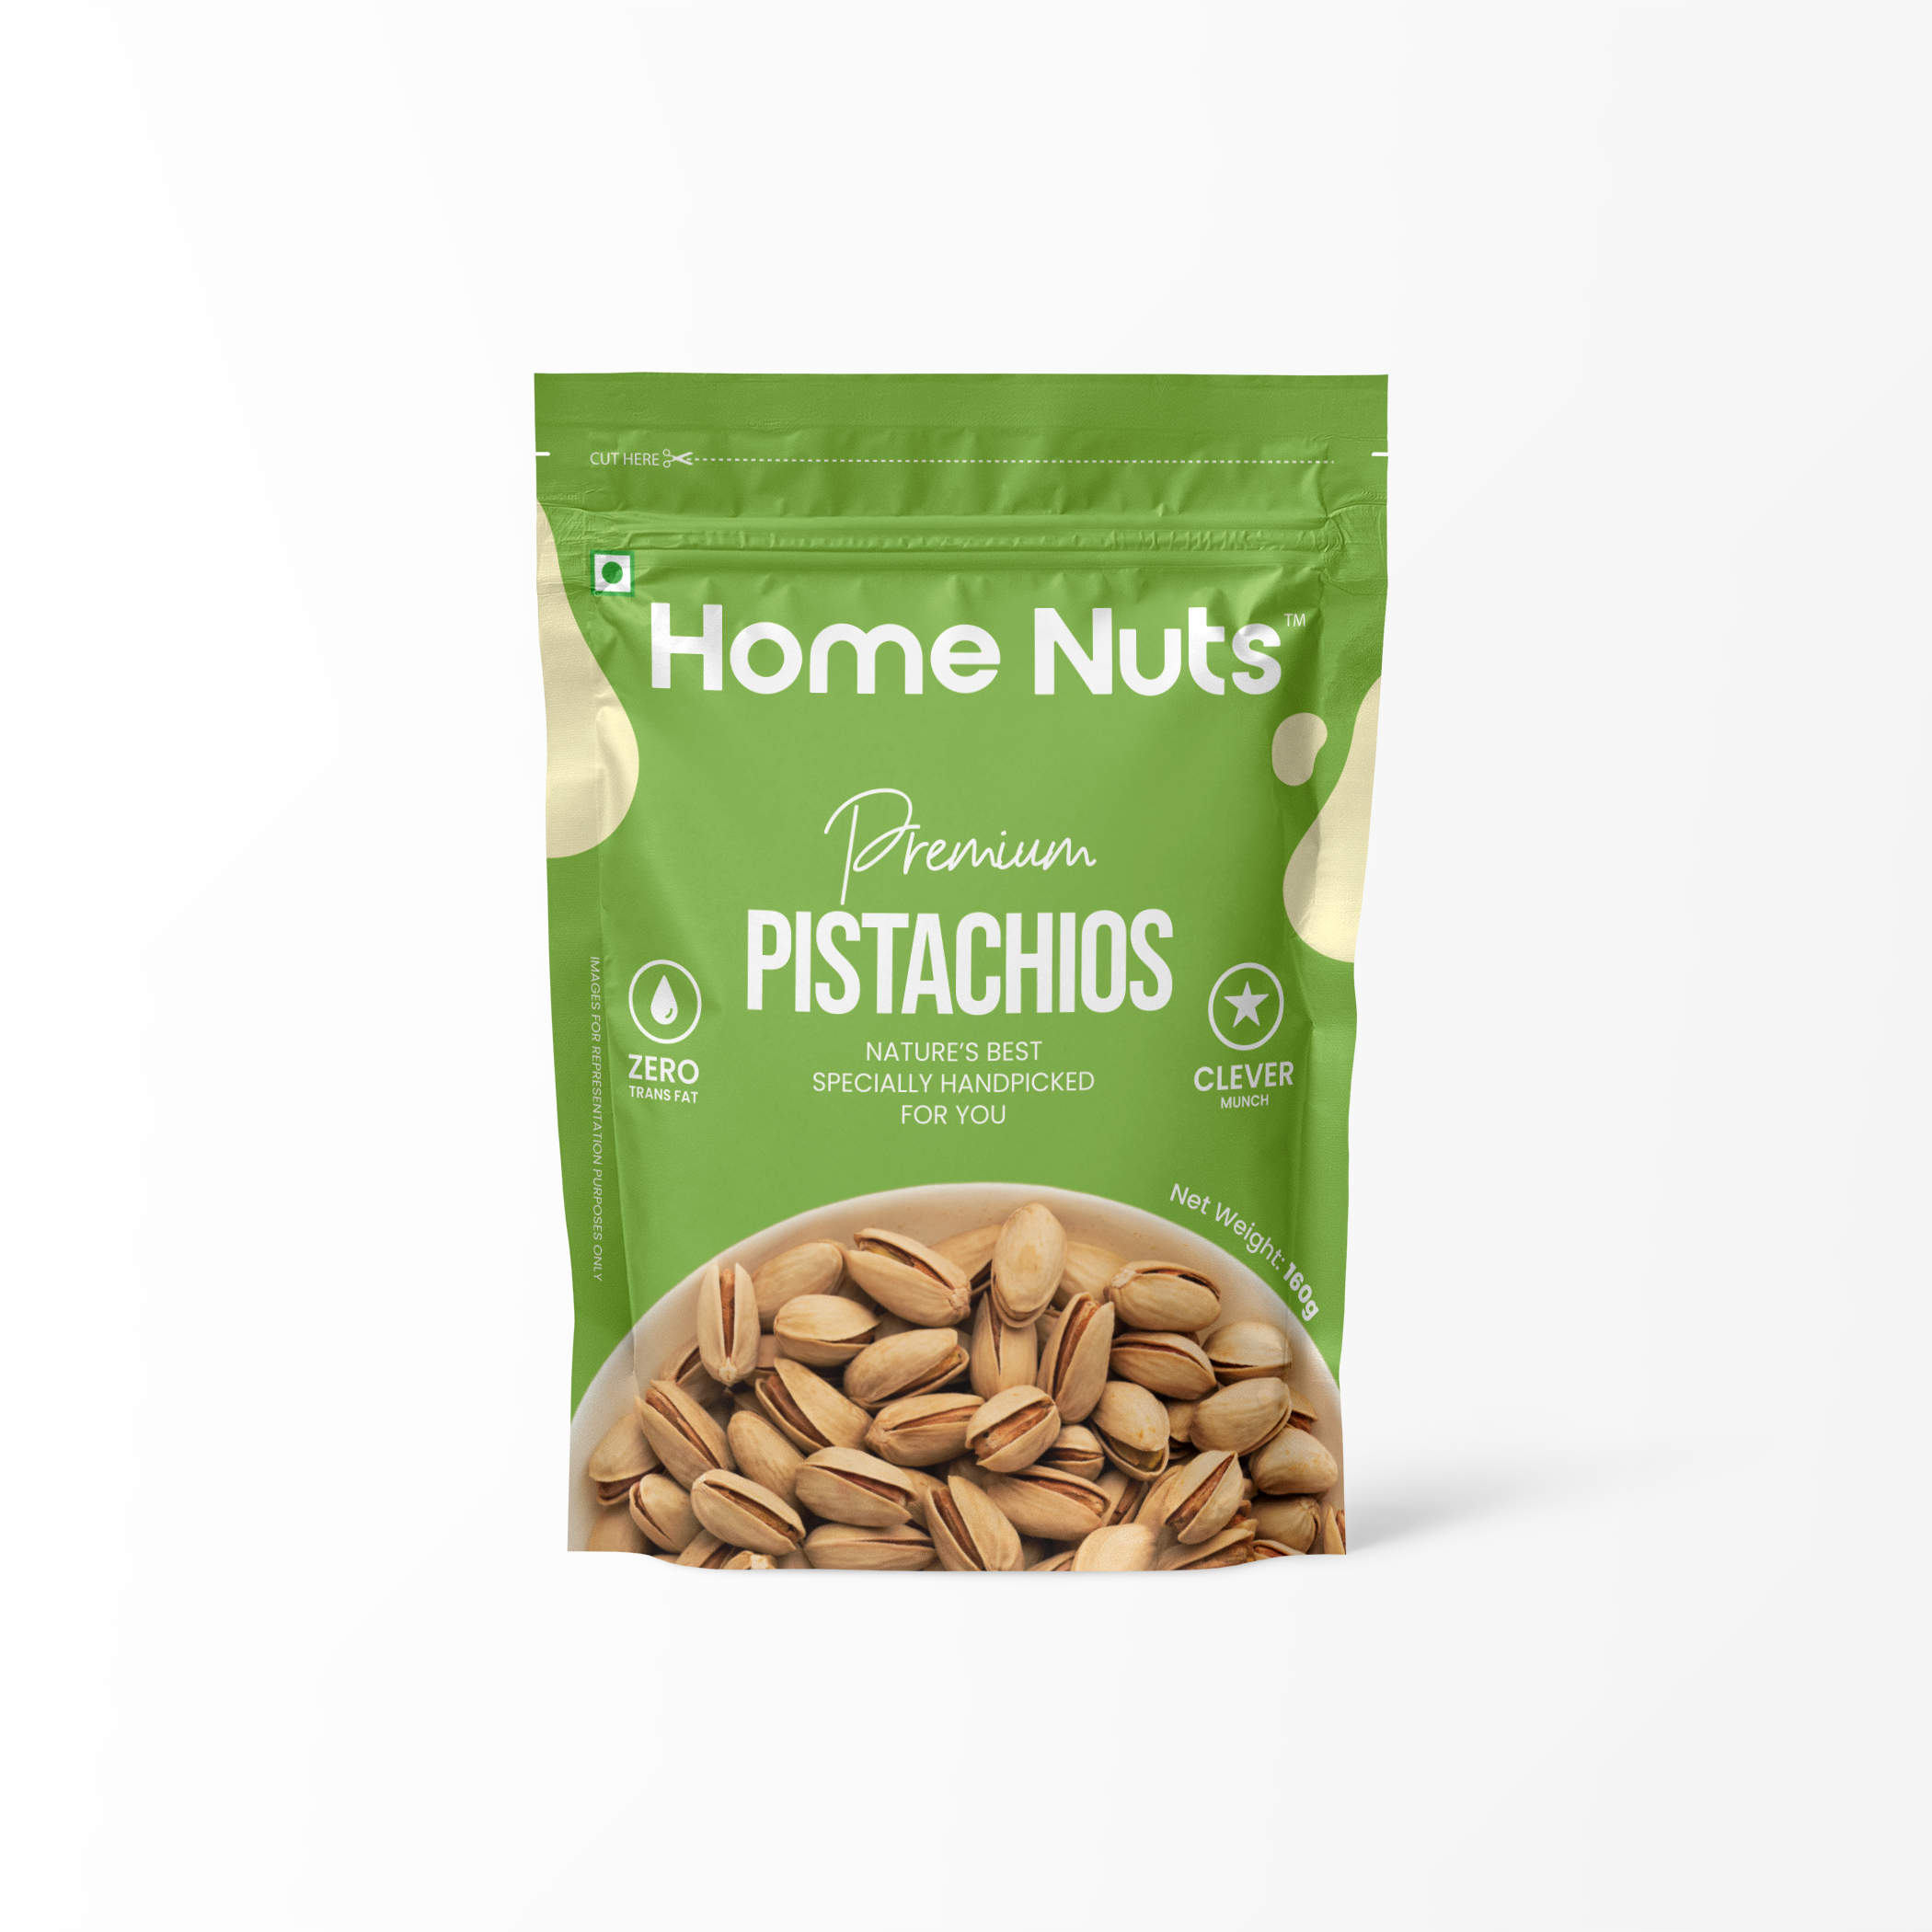 Home Nuts Premium Pistachios Beautiful